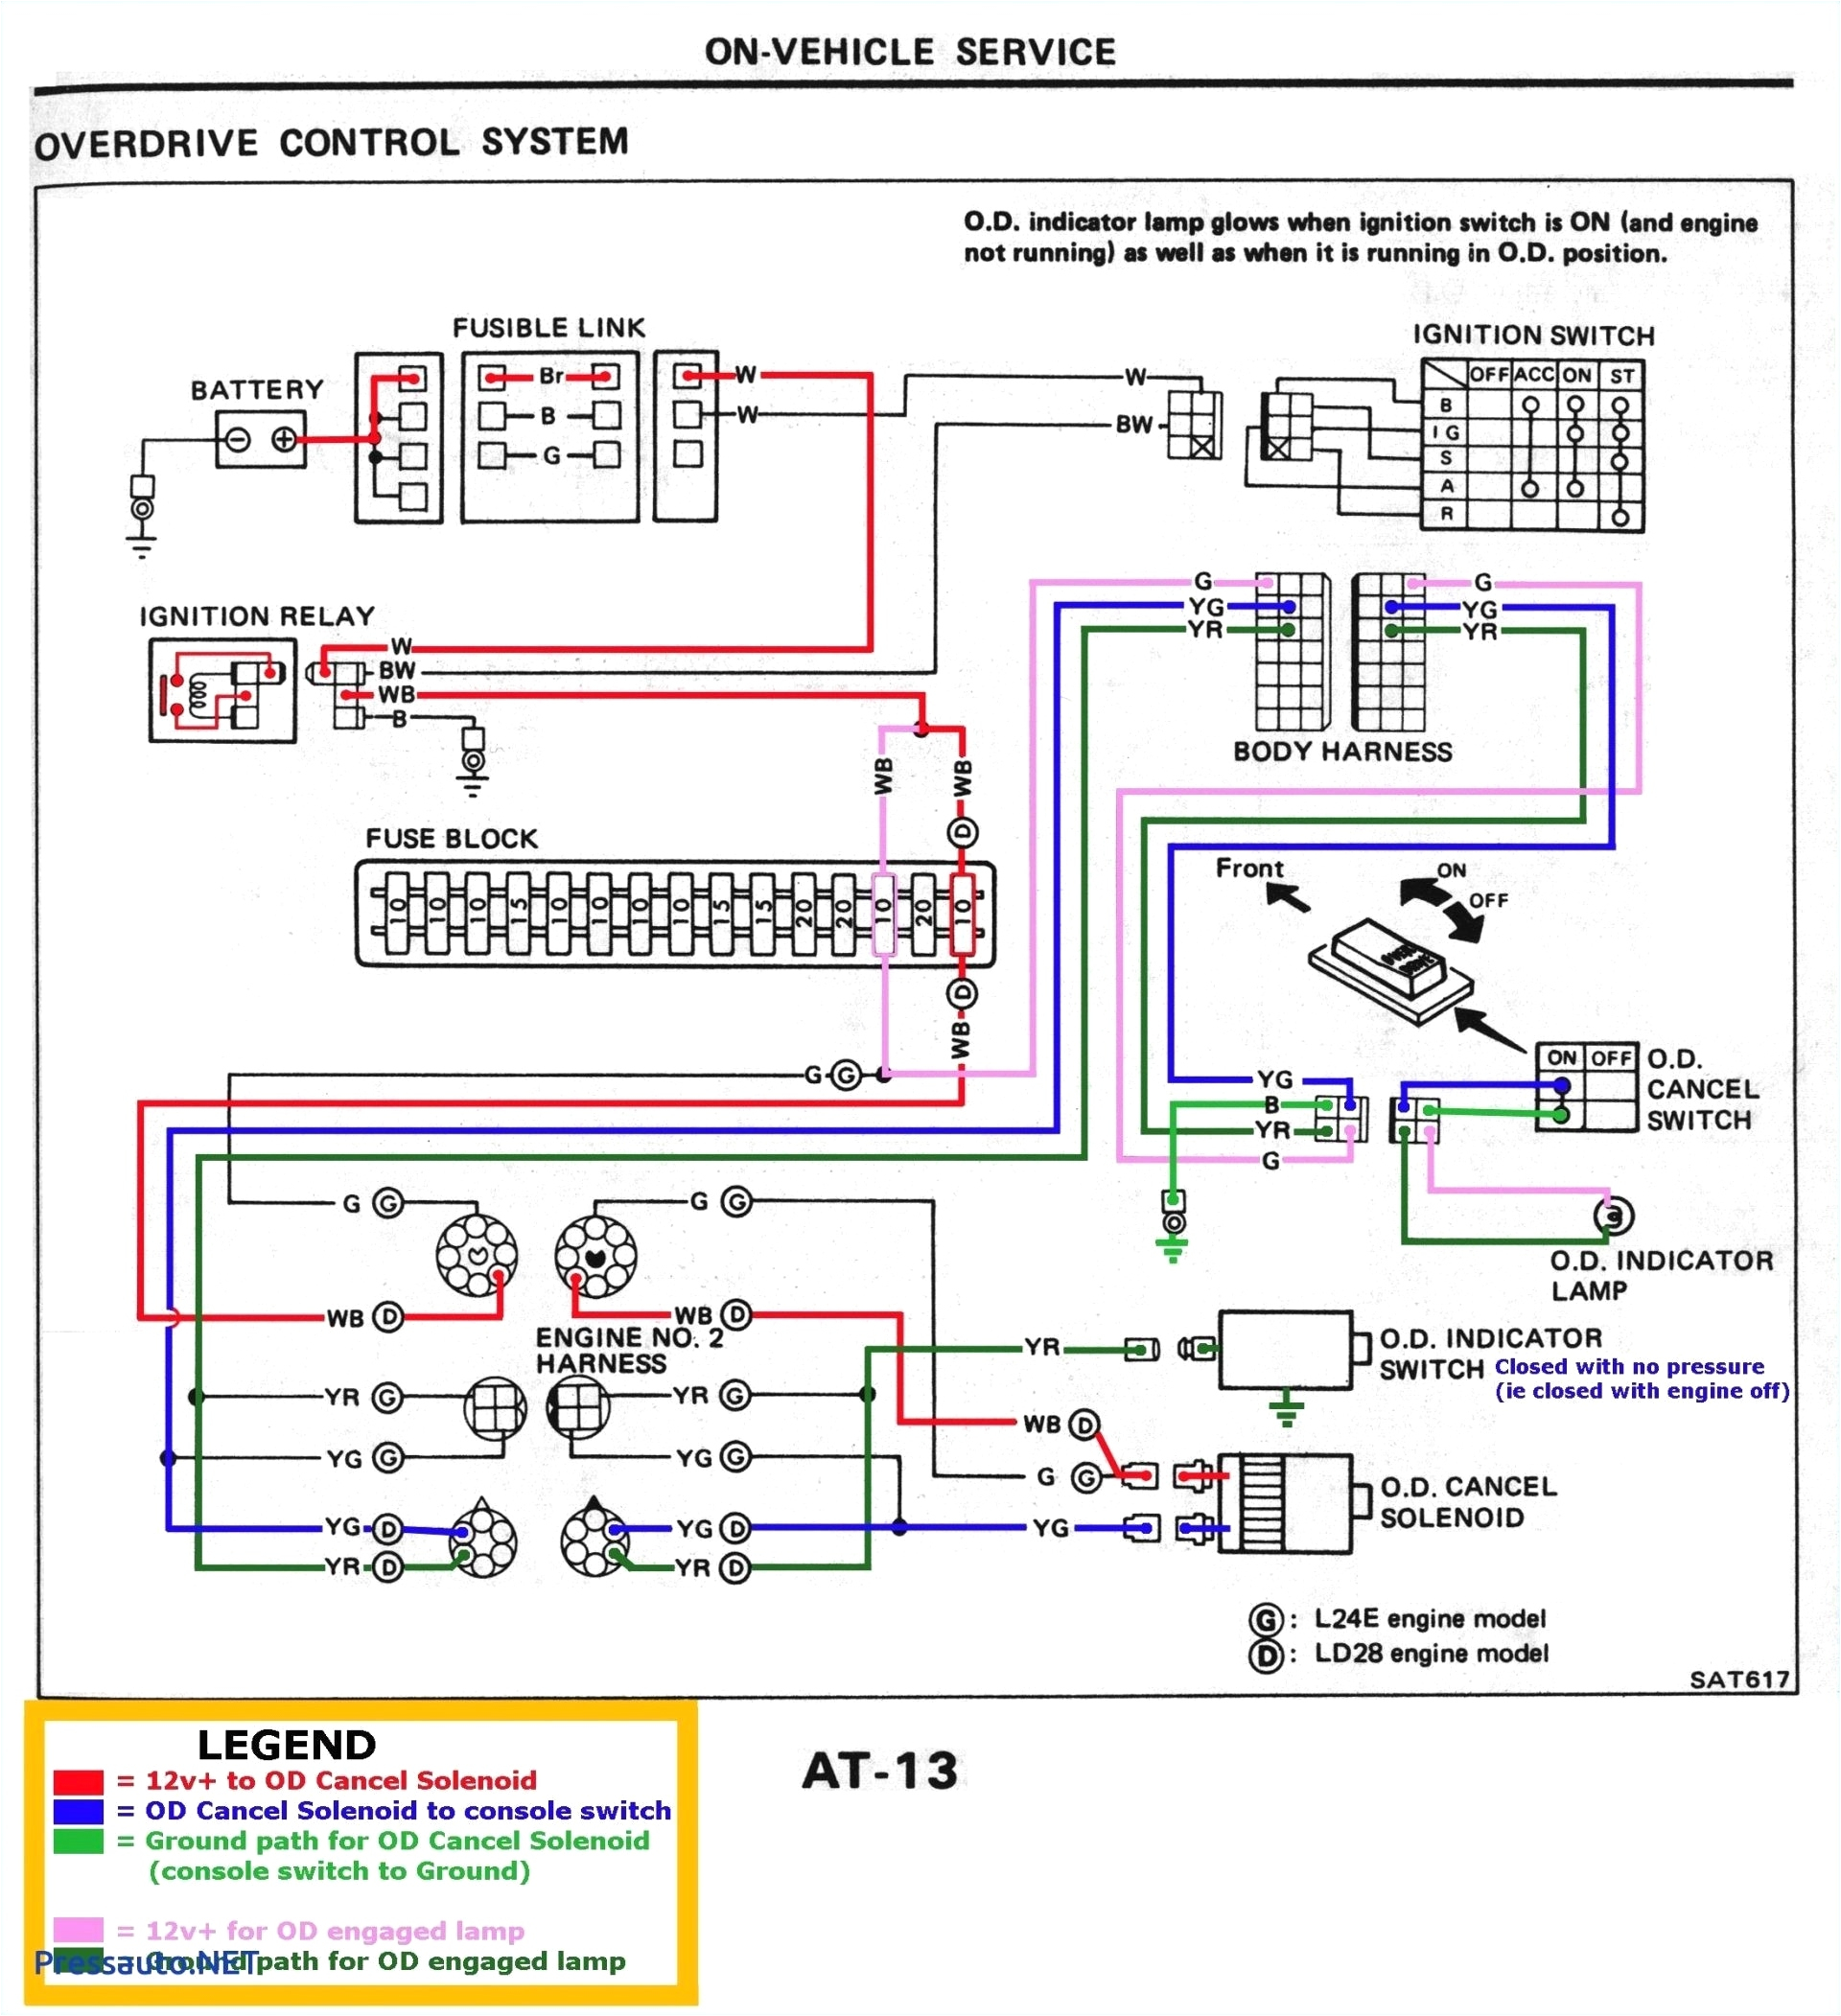 Defi Meter Wiring Diagram Defi Meter Wiring Diagram New Tachometer Wiring Diagram Fresh Super